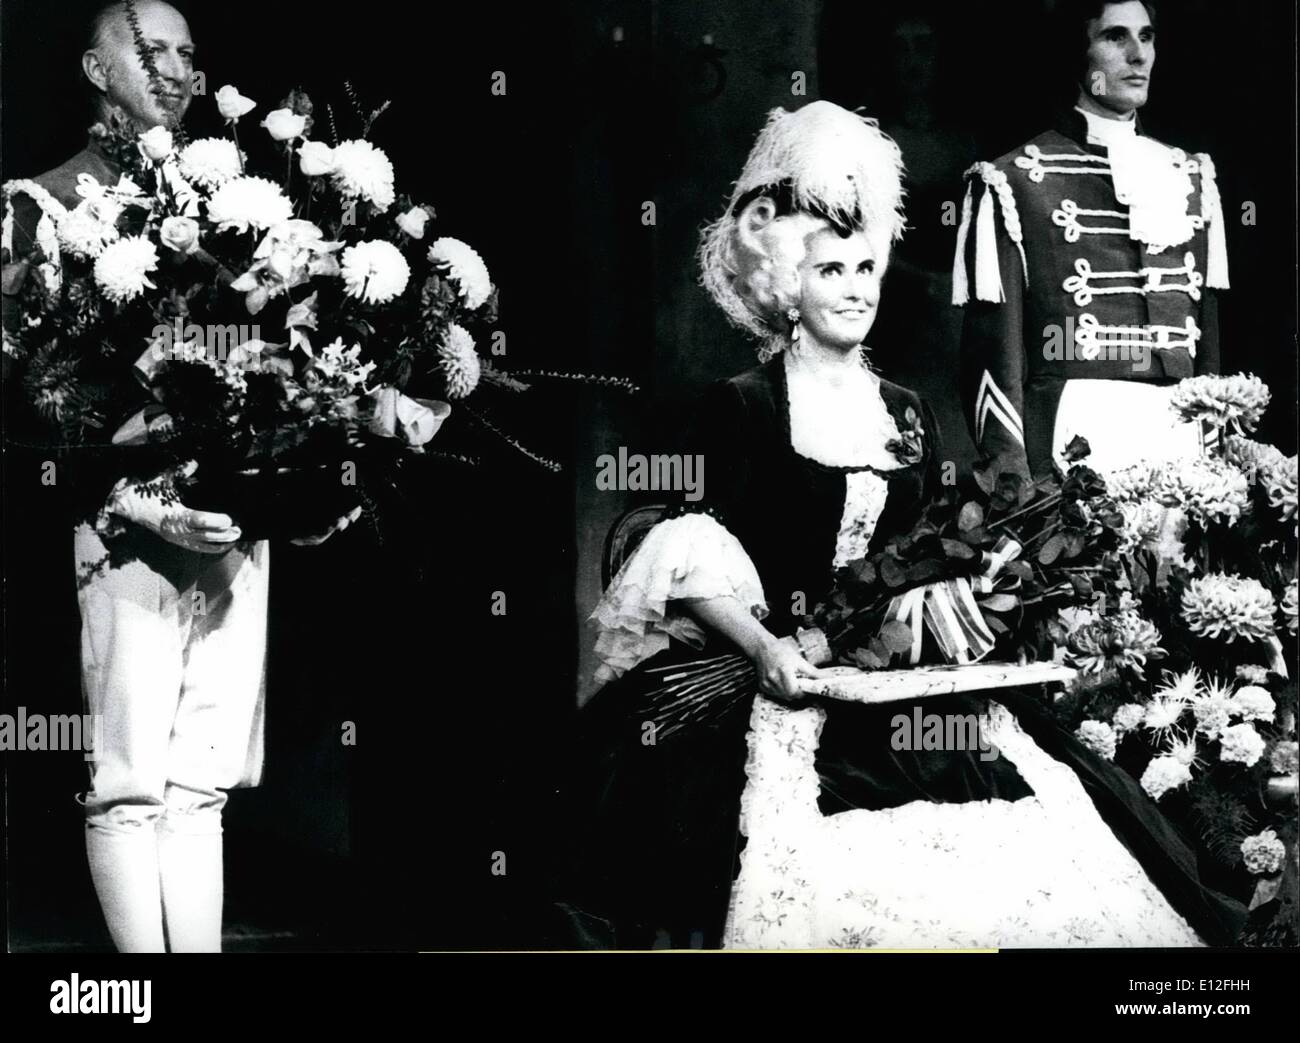 26. Dezember 2011 - Casa seit 30 Jahren auf der Bühne.: Welt berühmten Schweizer Sängerin Lisa della Casa hatte ihr 30-jähriges Jubiläum als Künstler während der Premiere von "Rosenkavalier" am Opernhaus in Zürich, der Ort ihrer ersten Performancce. Stockfoto